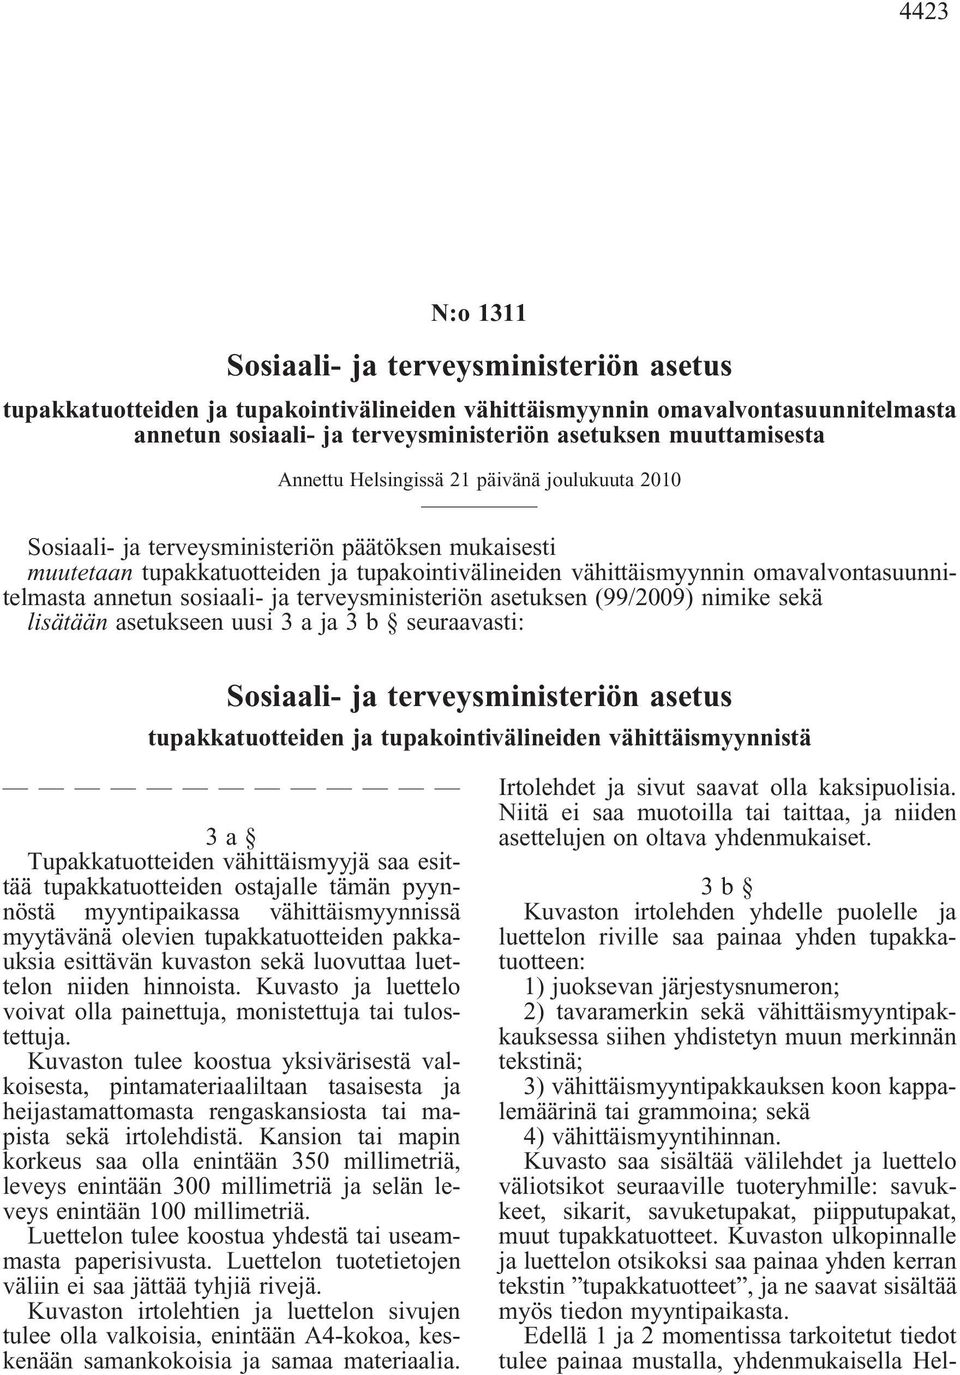 omavalvontasuunnitelmasta annetun sosiaali- ja terveysministeriön asetuksen (99/2009) nimike sekä lisätään asetukseen uusi 3 a ja 3 b seuraavasti: Sosiaali- ja terveysministeriön asetus